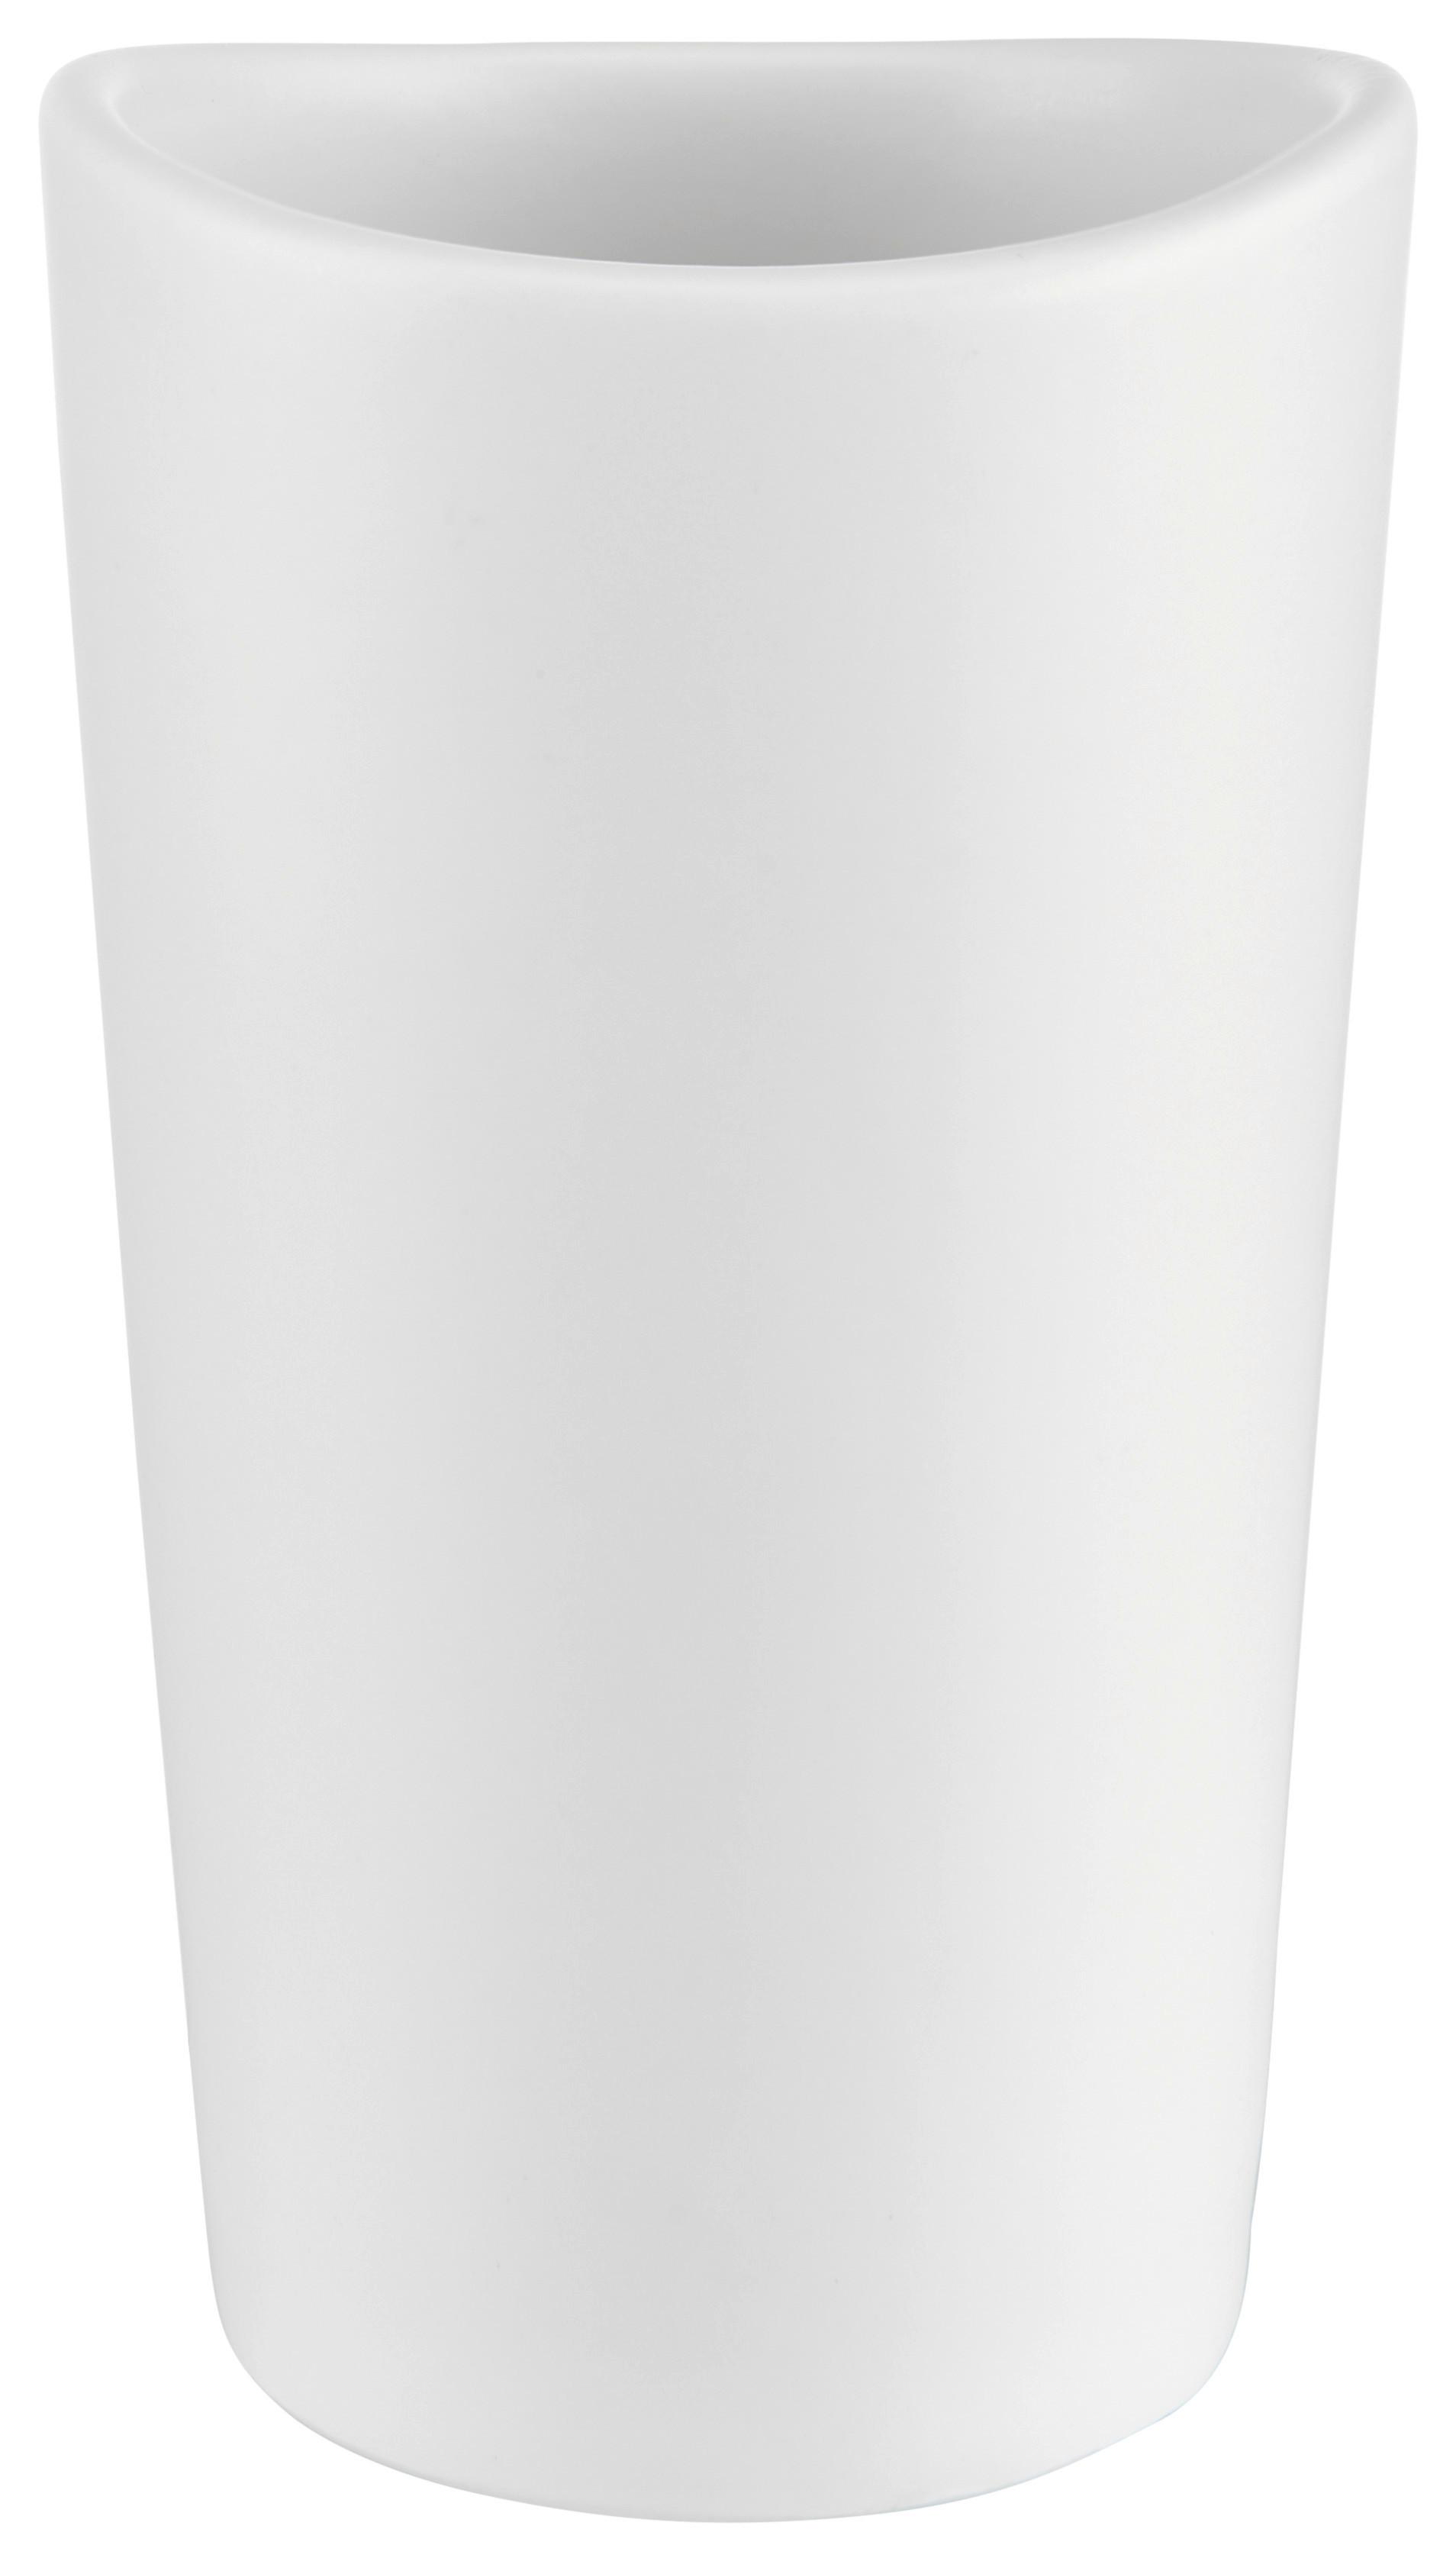 Zahnputzbecher Melrina in Weiß Ø ca. 6,5cm - Weiß, KONVENTIONELL, Keramik (6,7/11,51cm) - Modern Living